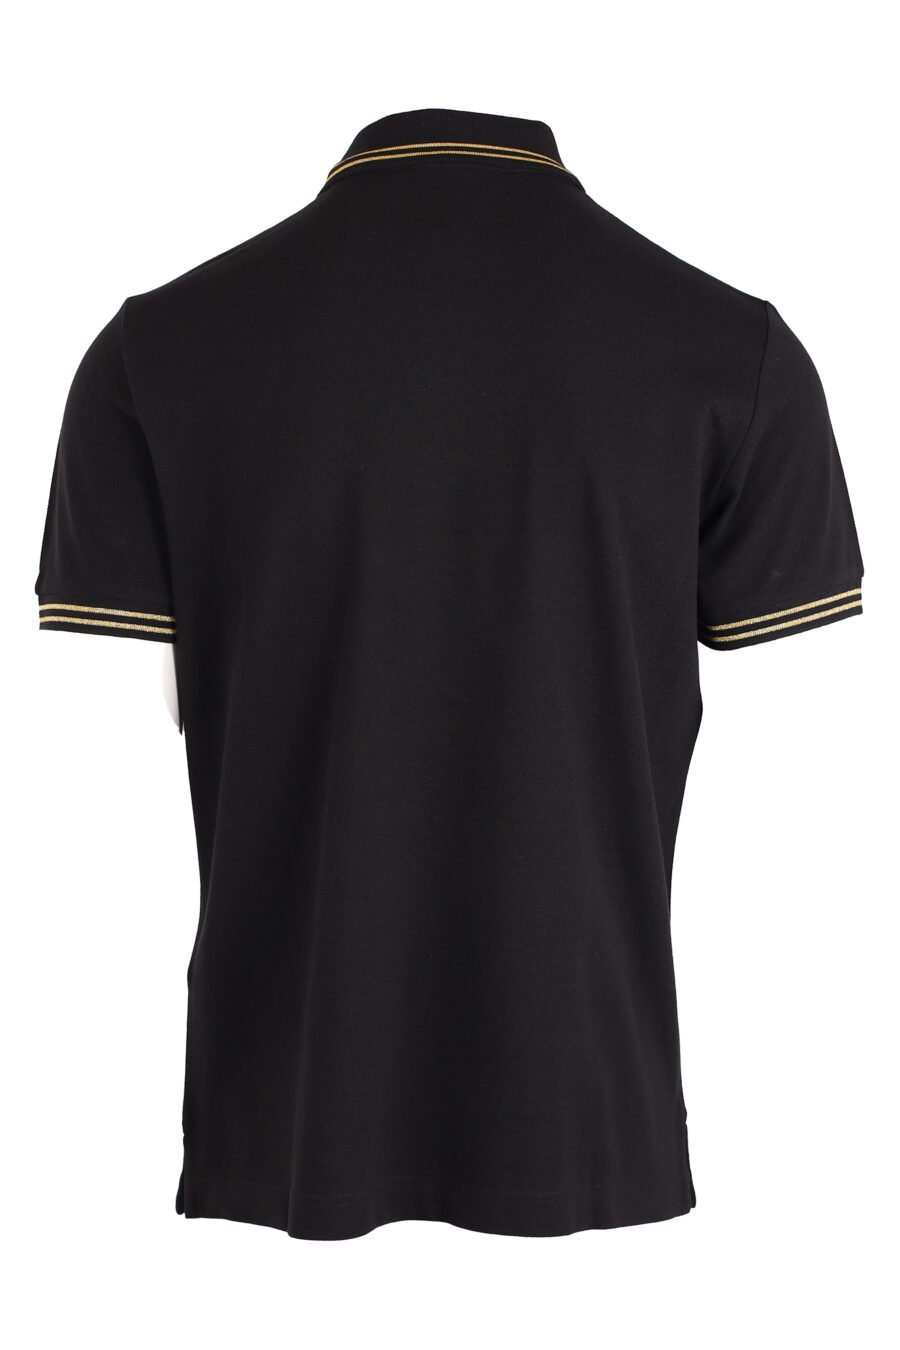 Schwarzes Poloshirt mit goldenen Streifen und Logostempel - IMG 4157